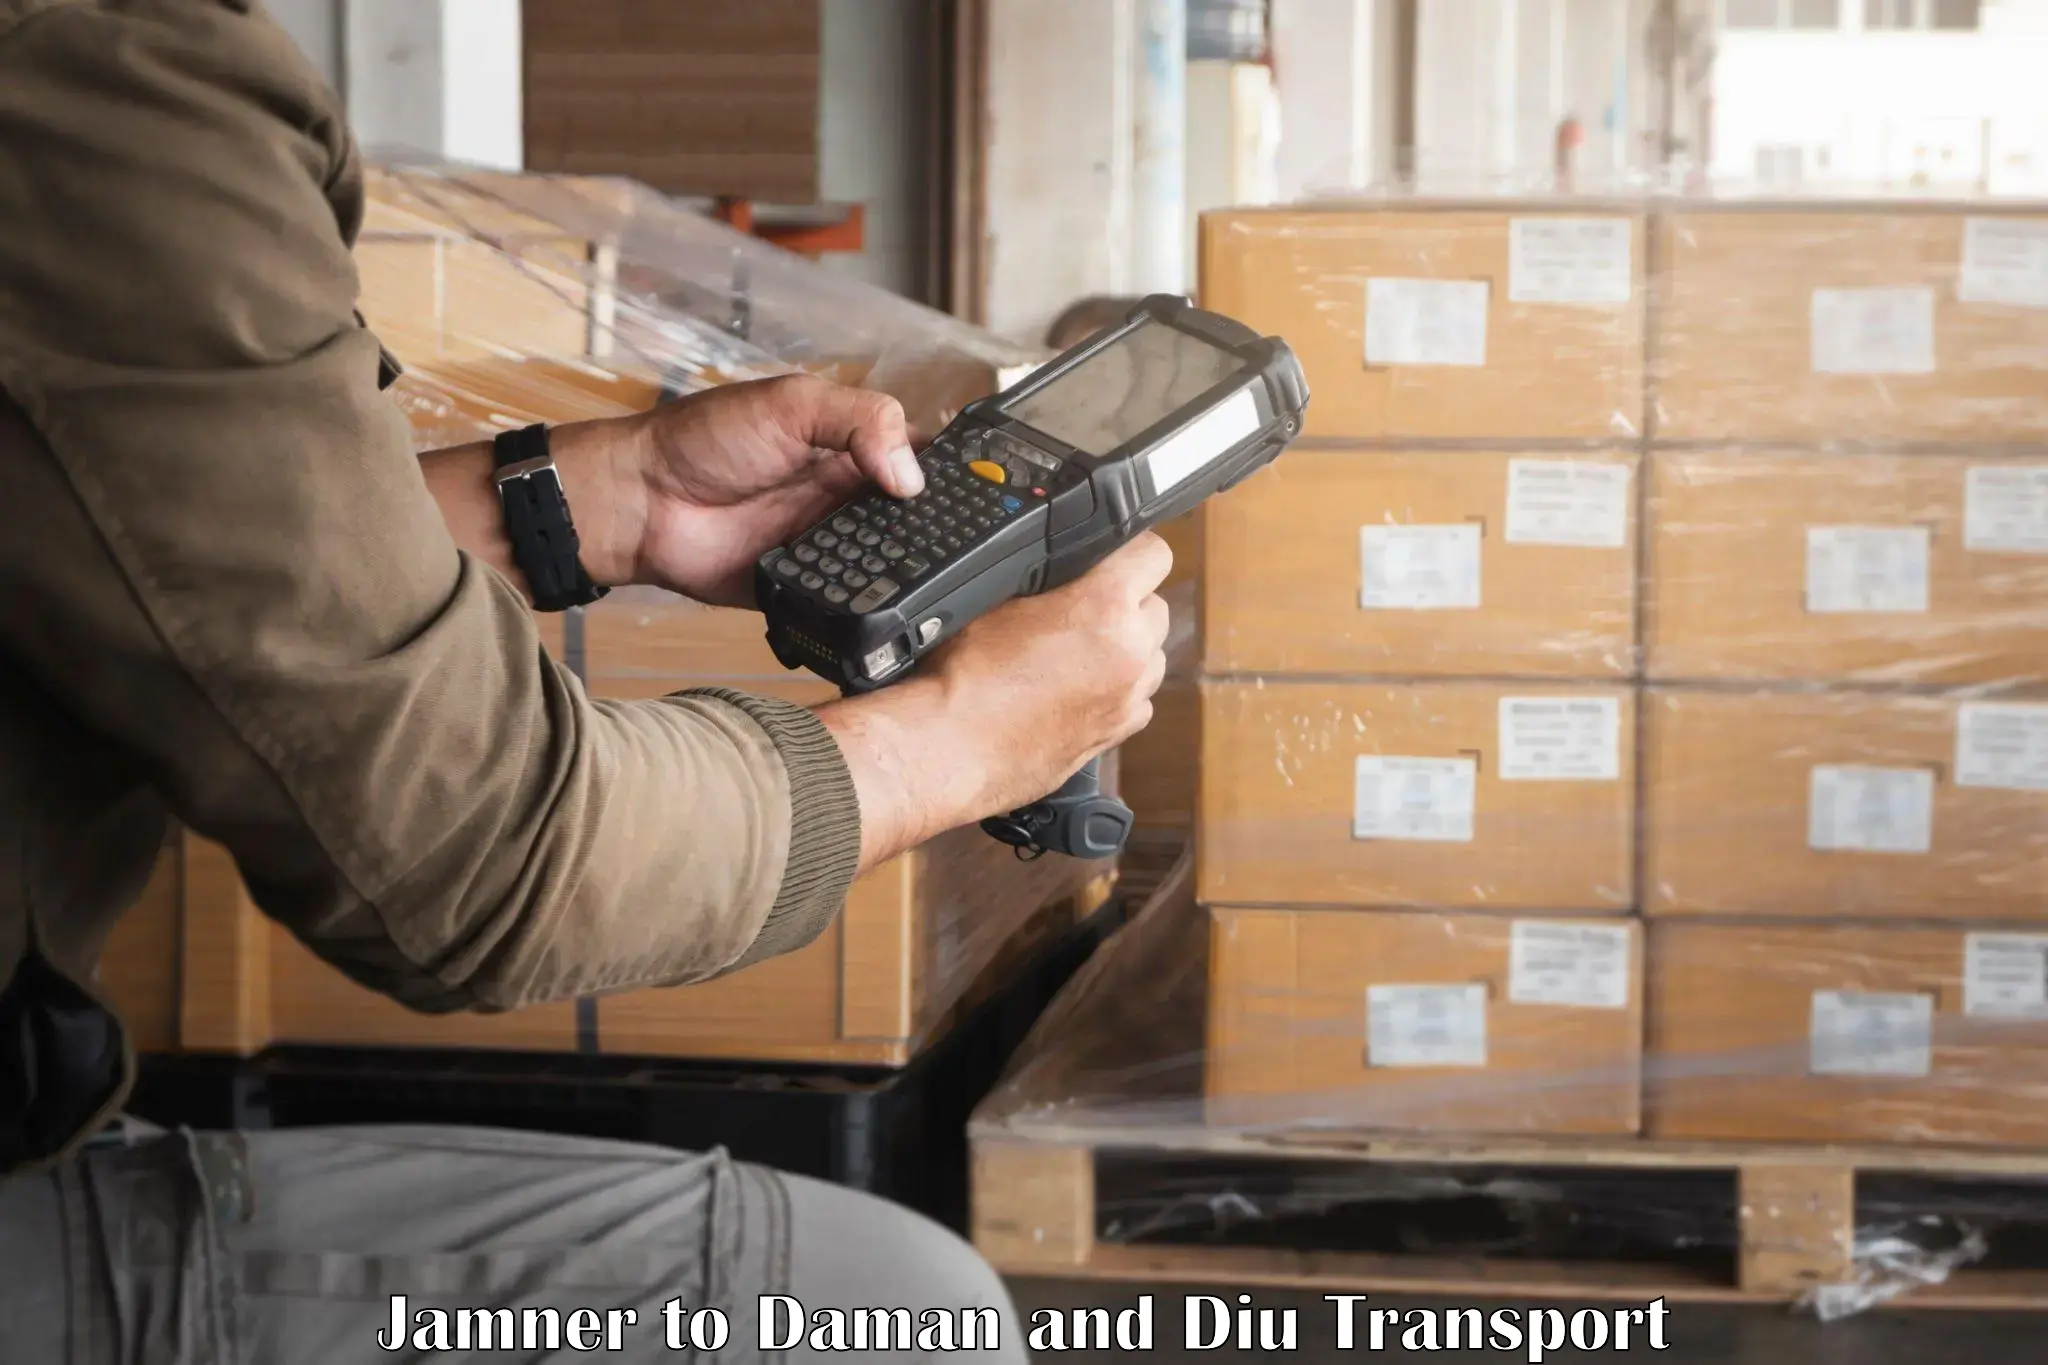 Lorry transport service Jamner to Daman and Diu